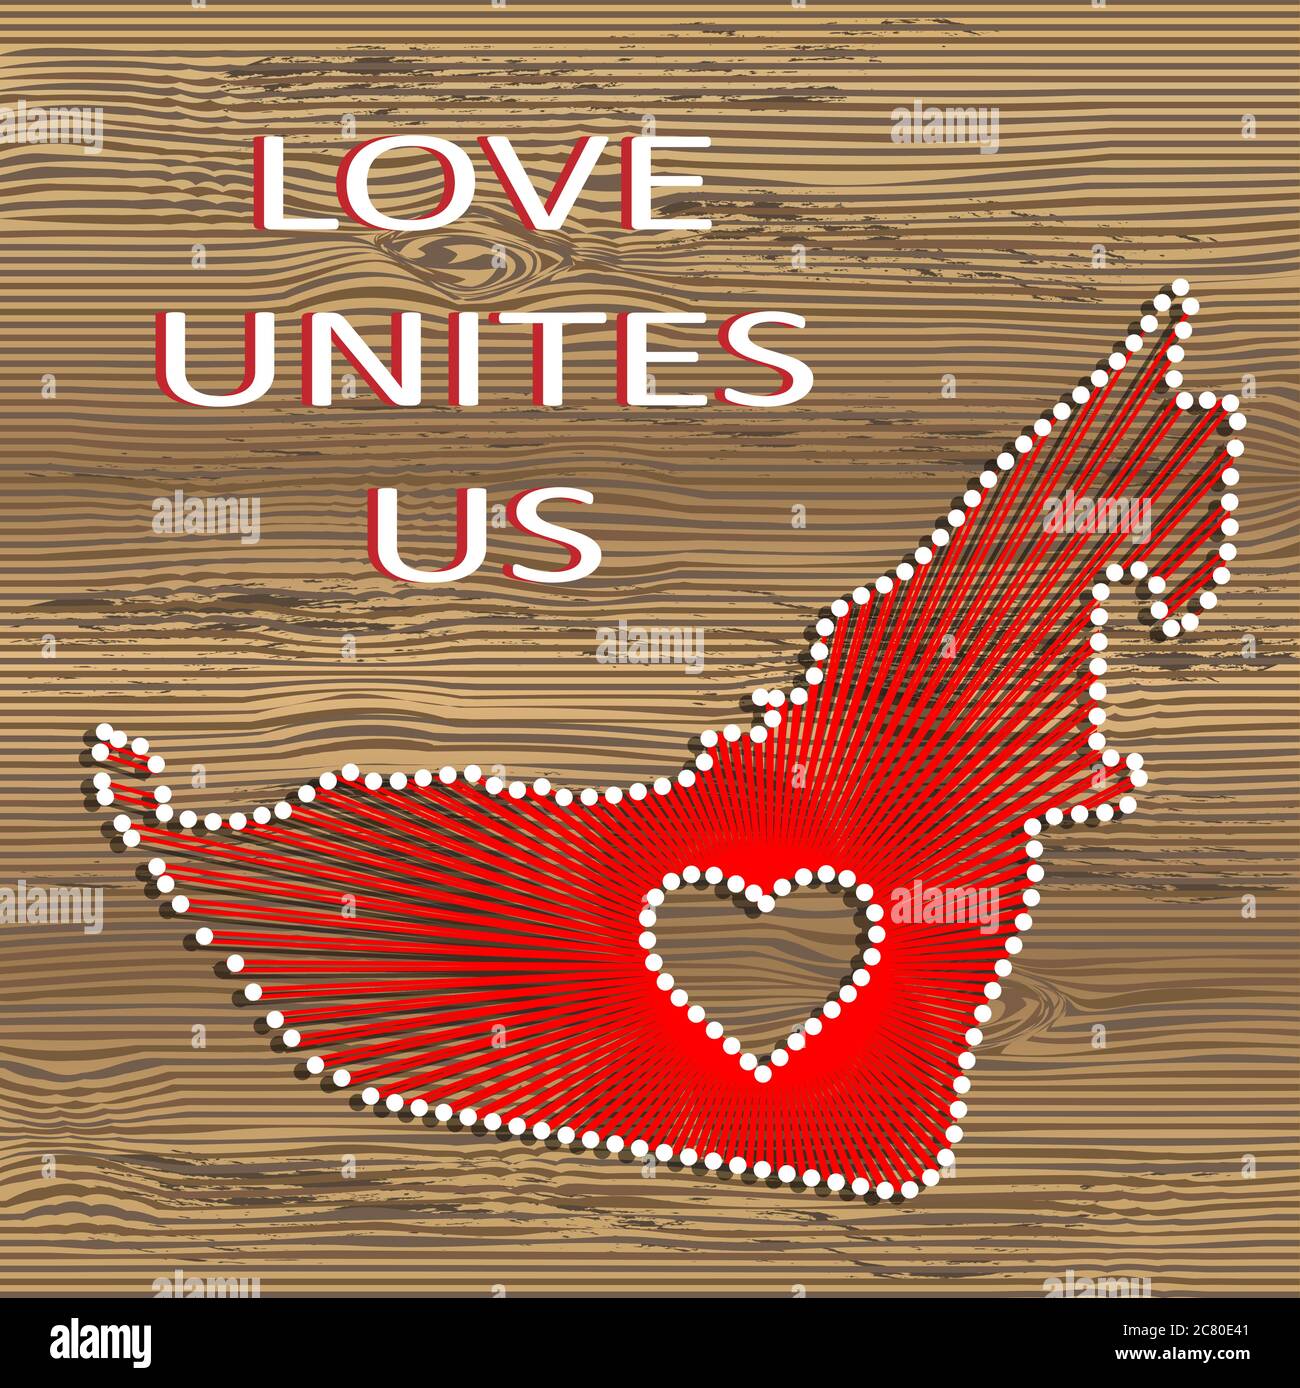 Vereinigte arabische emirate Kunst Vektorkarte mit Herz. Fadenkunst, Garn und Stifte auf Holzbrett Textur. Liebe verbindet uns. Botschaft der Liebe. Kunstkarte der VAE Stock Vektor